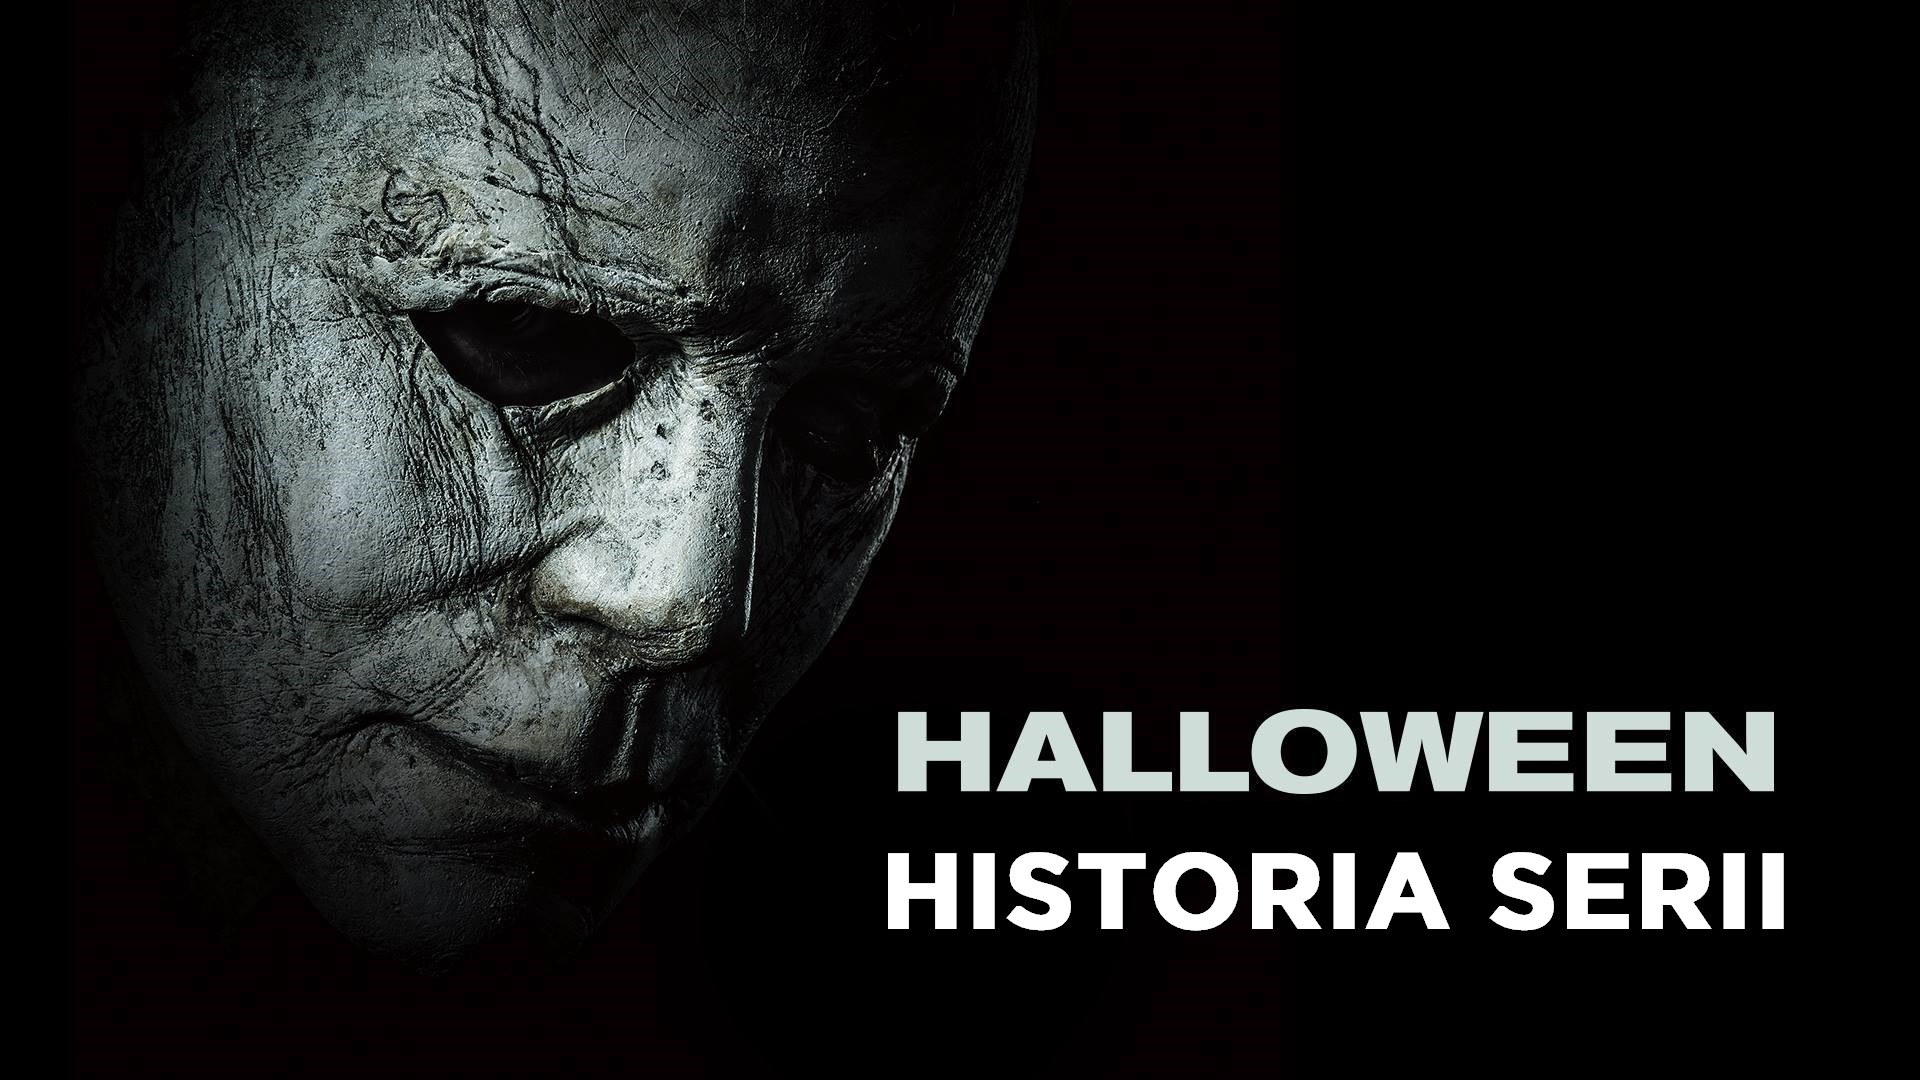 Historia serii Halloween 1978 -2018